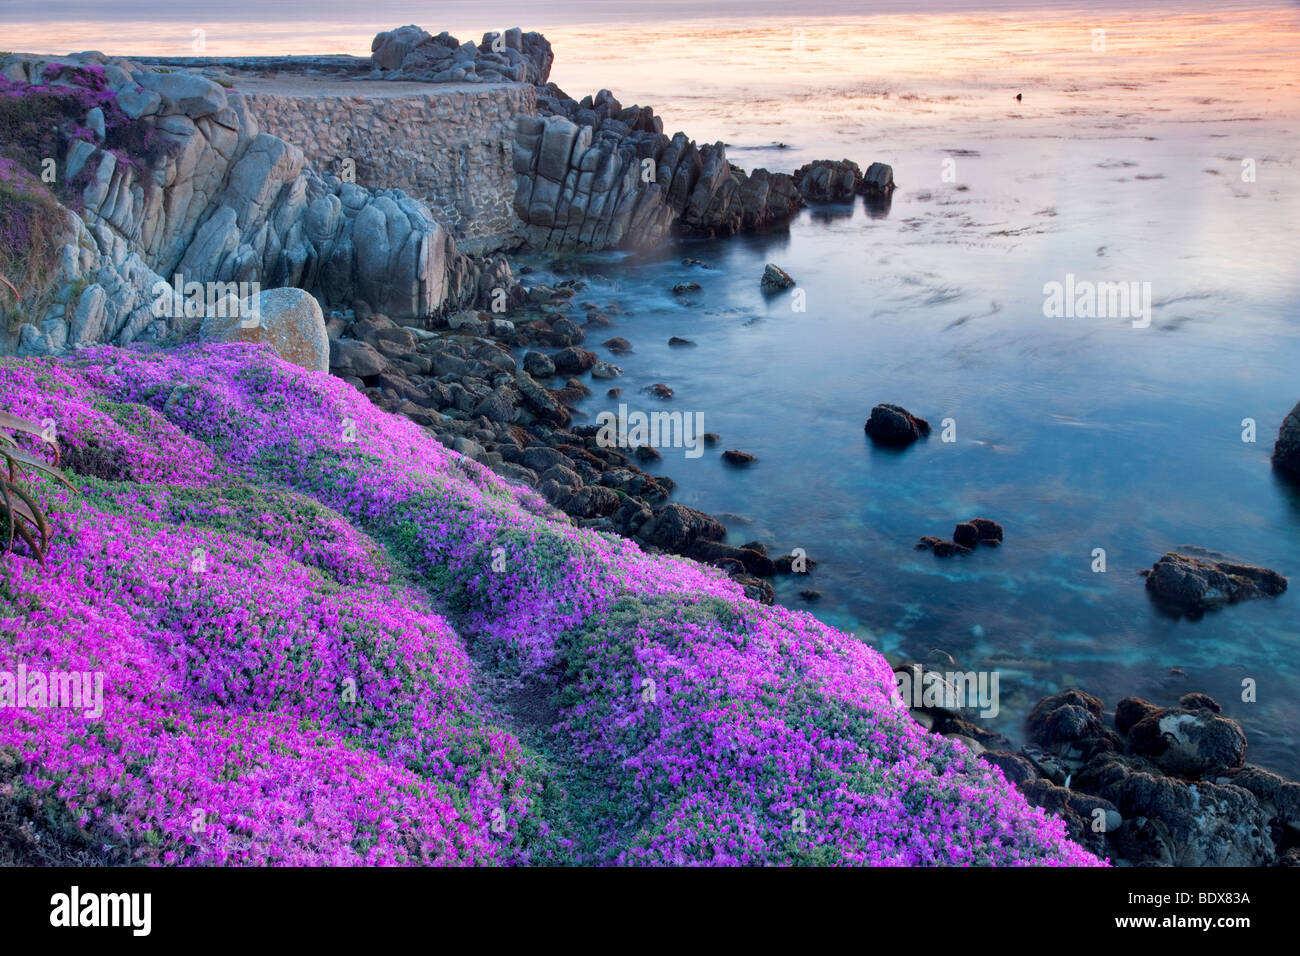 Planta de hielo púrpura florece y océano. Pacific Grove, California Foto de stock